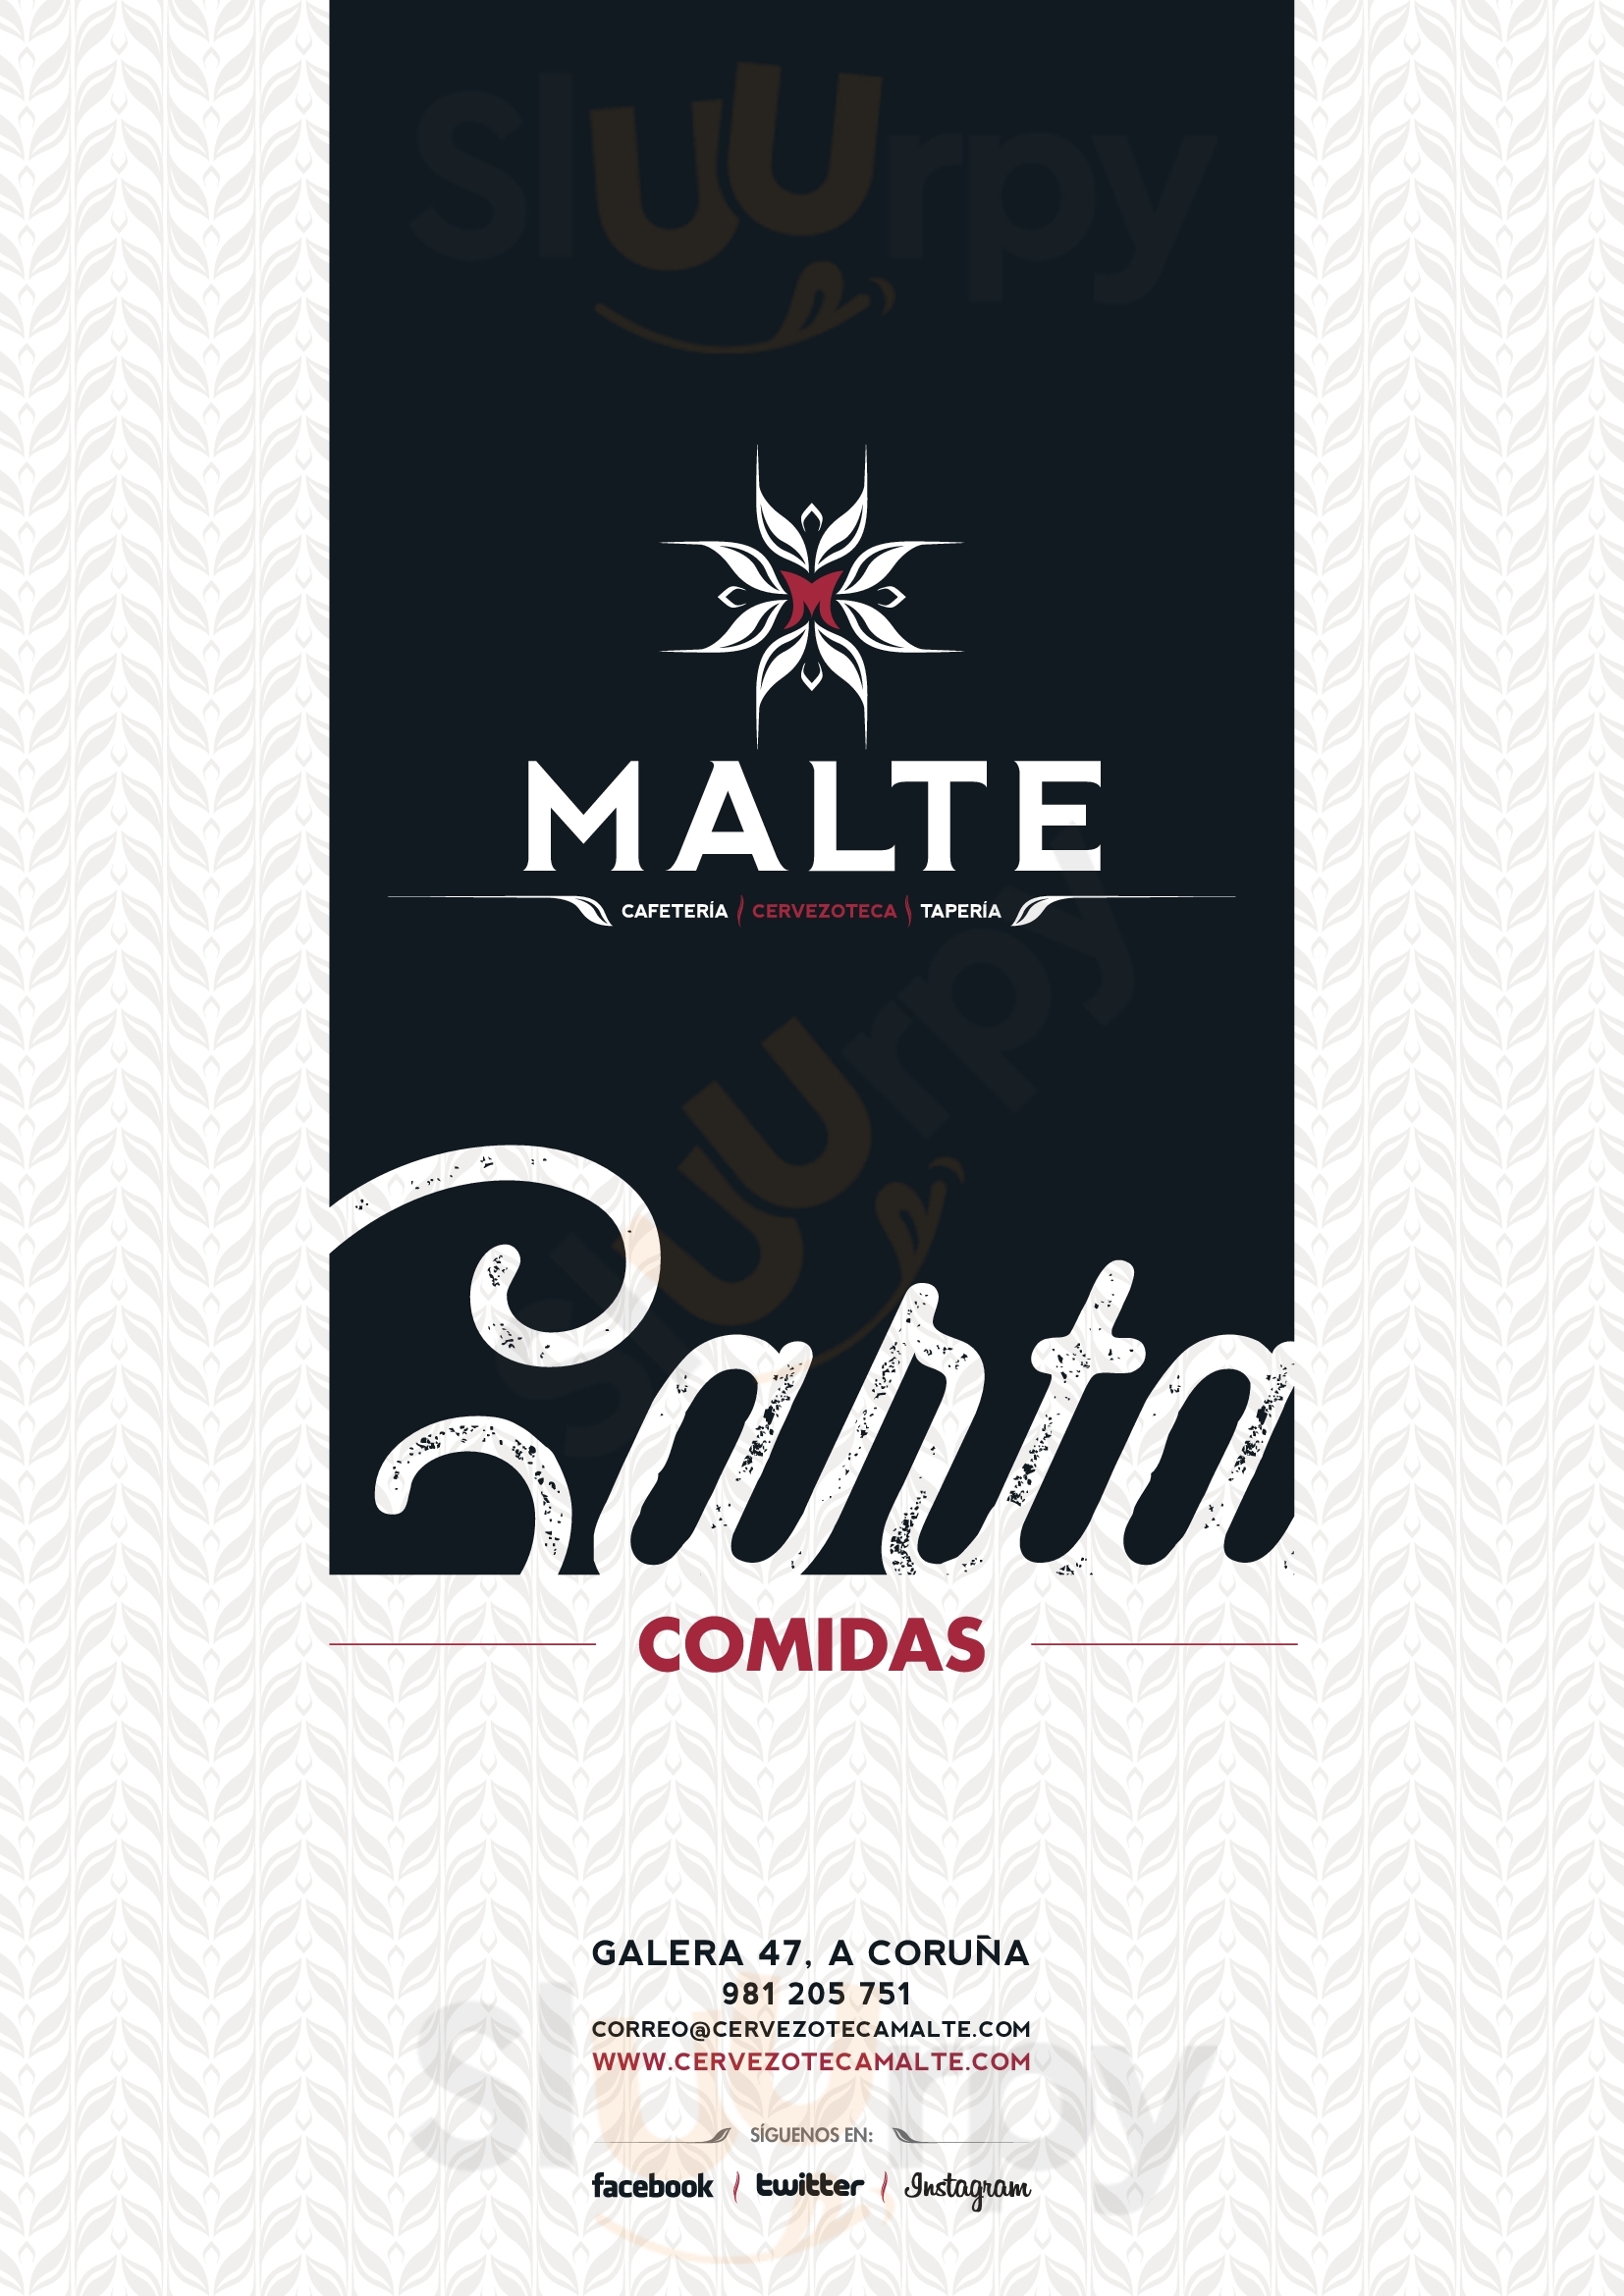 Cervezoteca Malte A Coruña Menu - 1